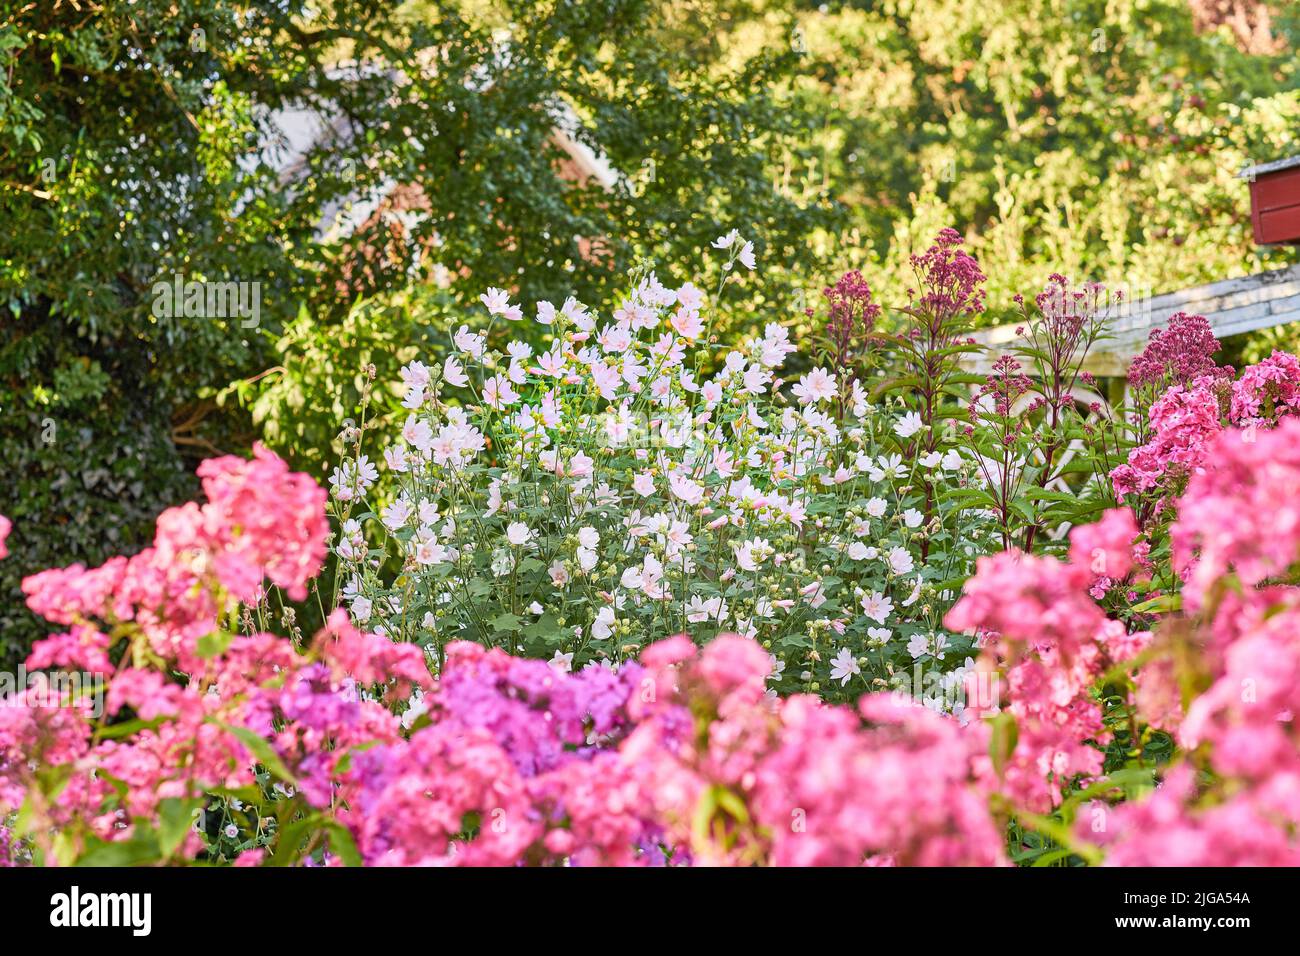 Fiori di cosmo rosa che crescono e fioriscono in una lussureggiante macchia verde in un giardino o cortile. Dettaglio testurizzato di varietà di piante fioritura e. Foto Stock